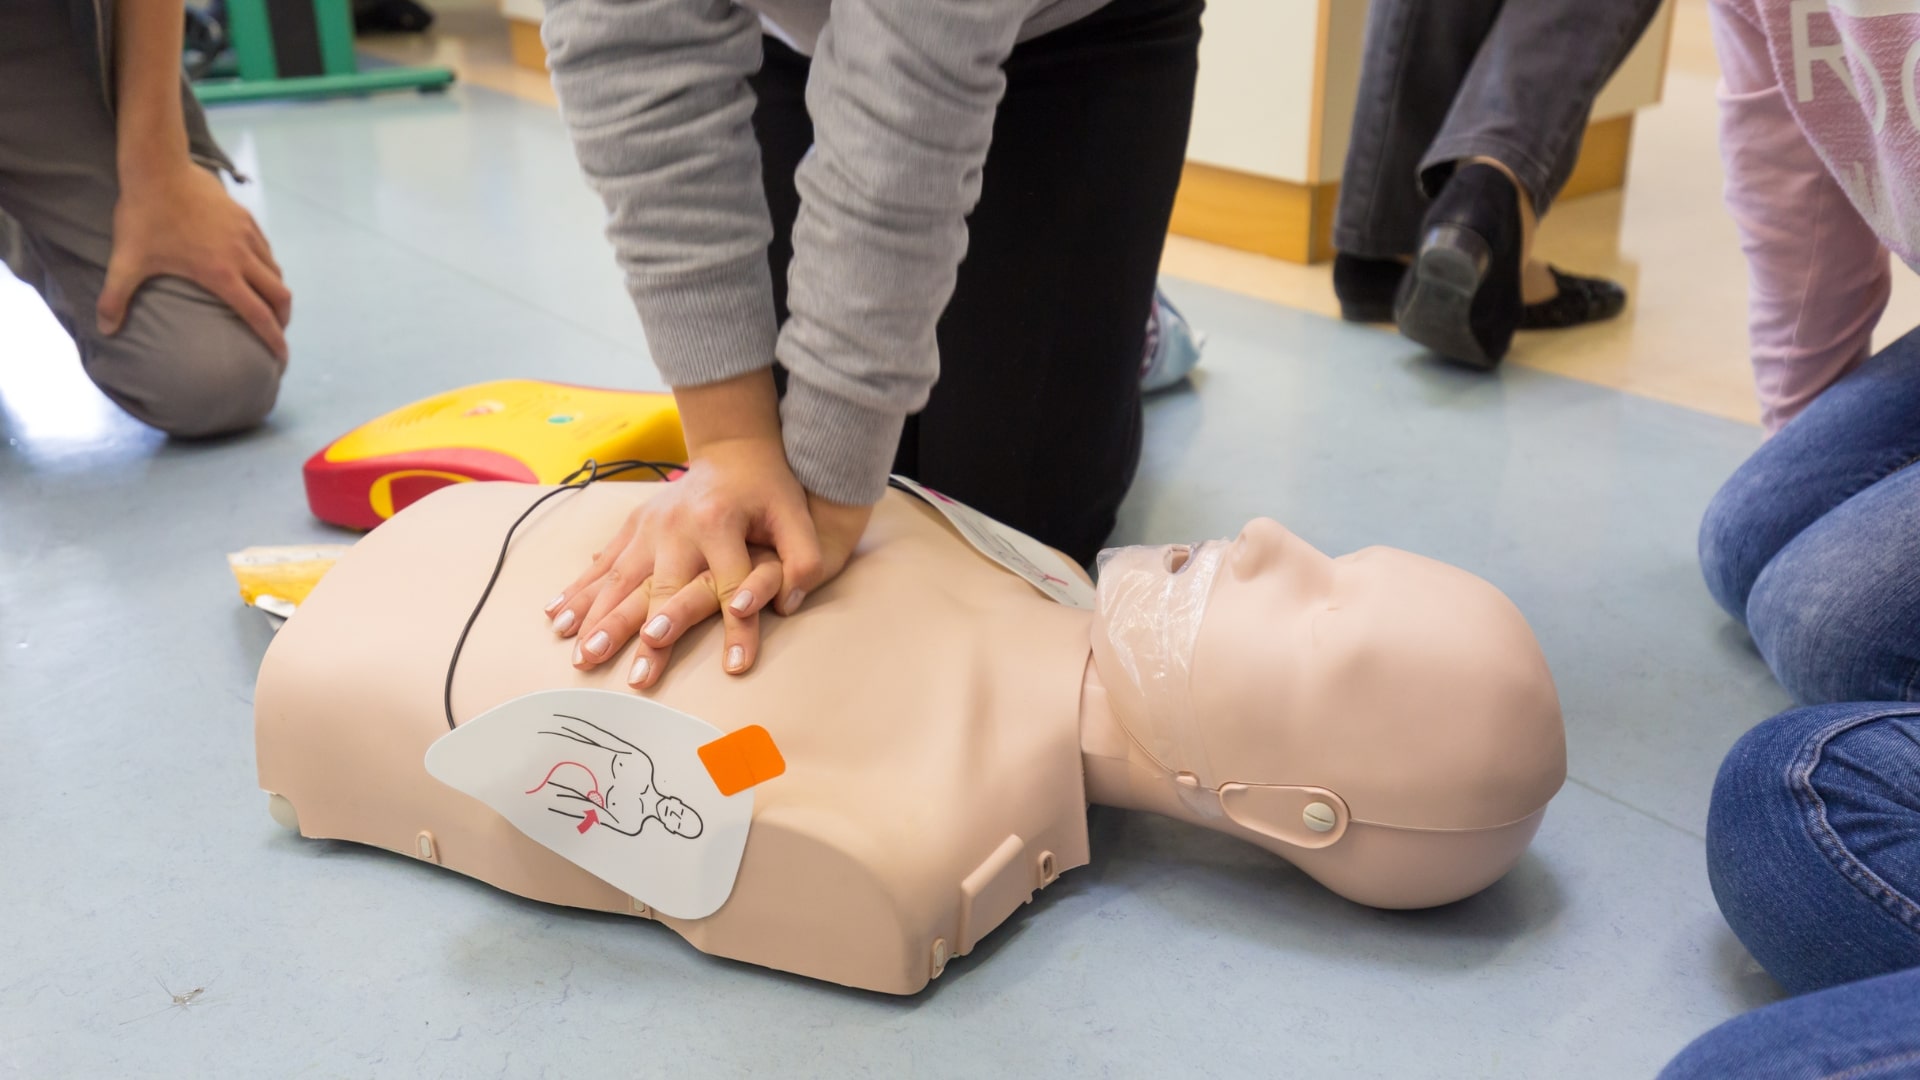 emergency first aid training alberta